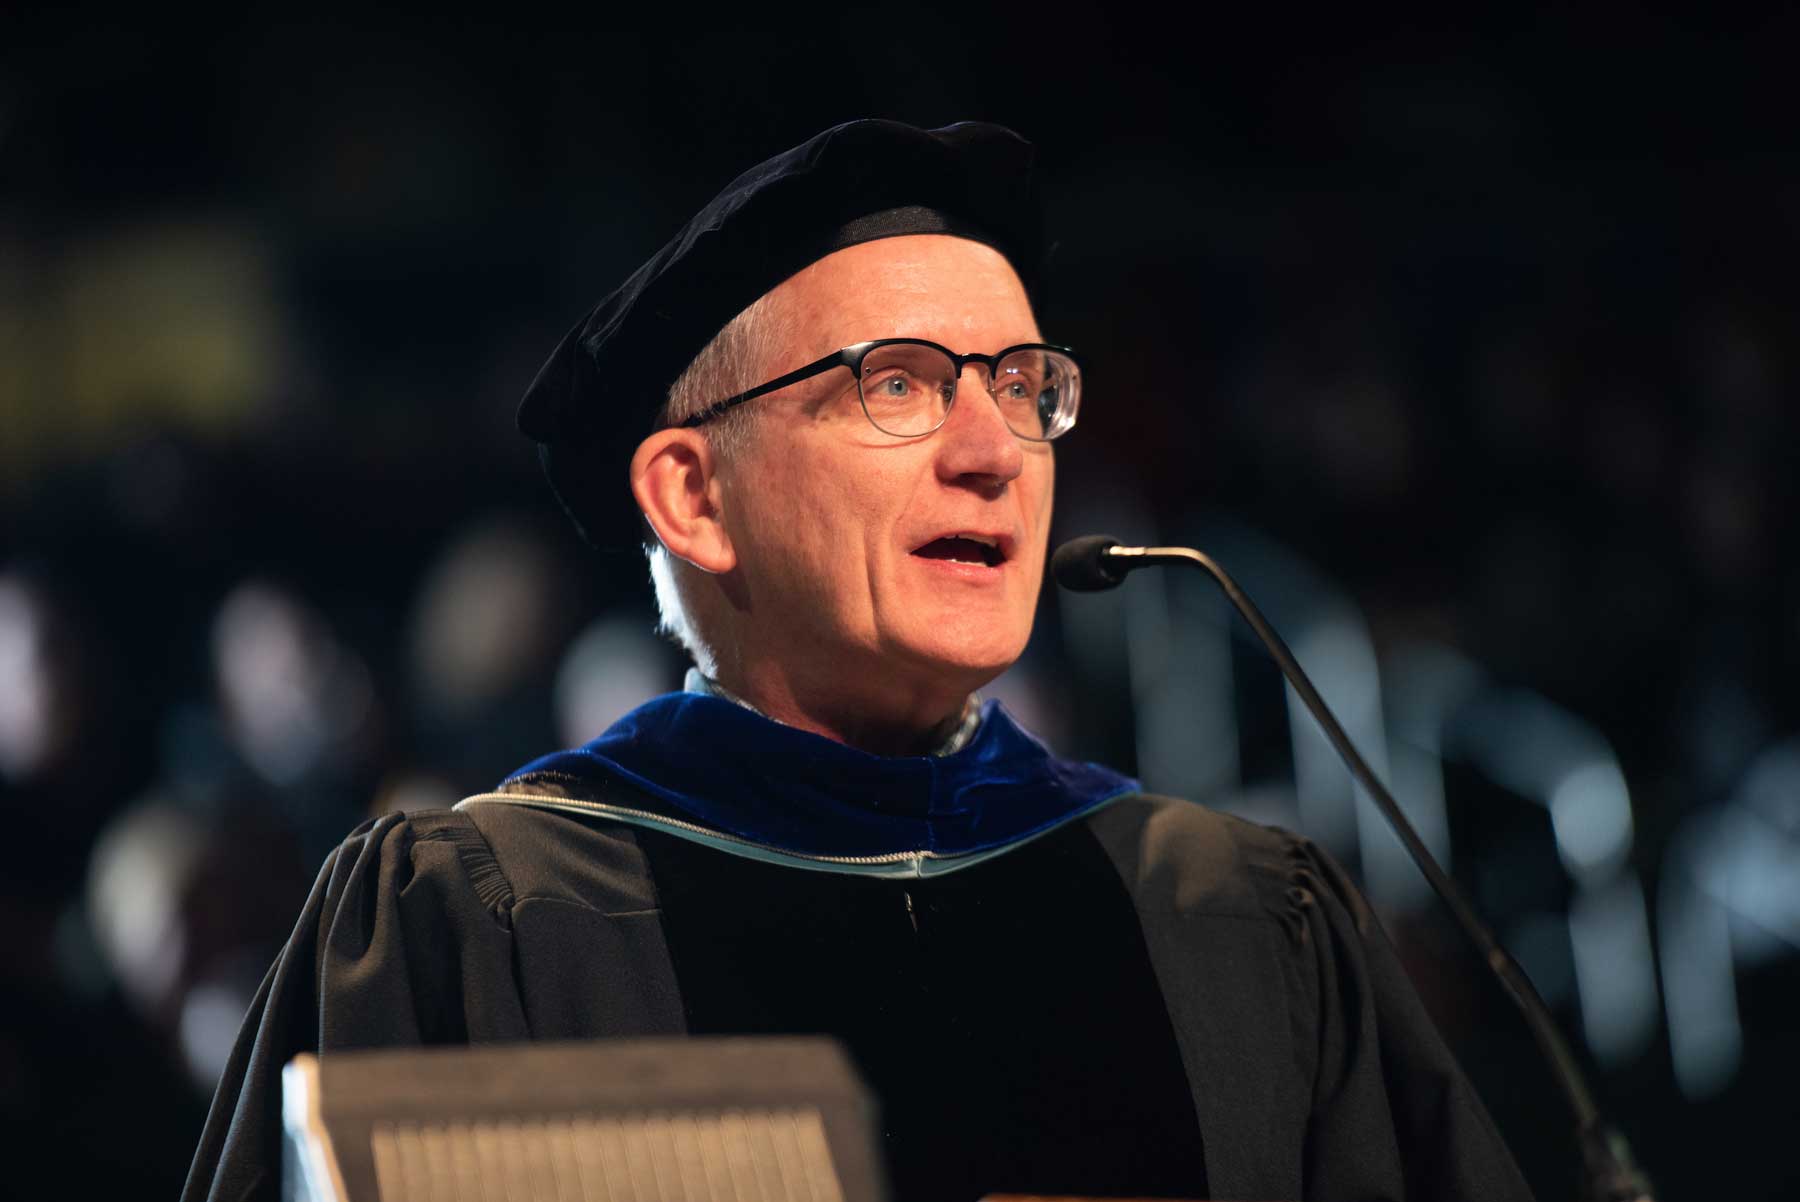 Portrait of Distinguished Professor Steve Evans